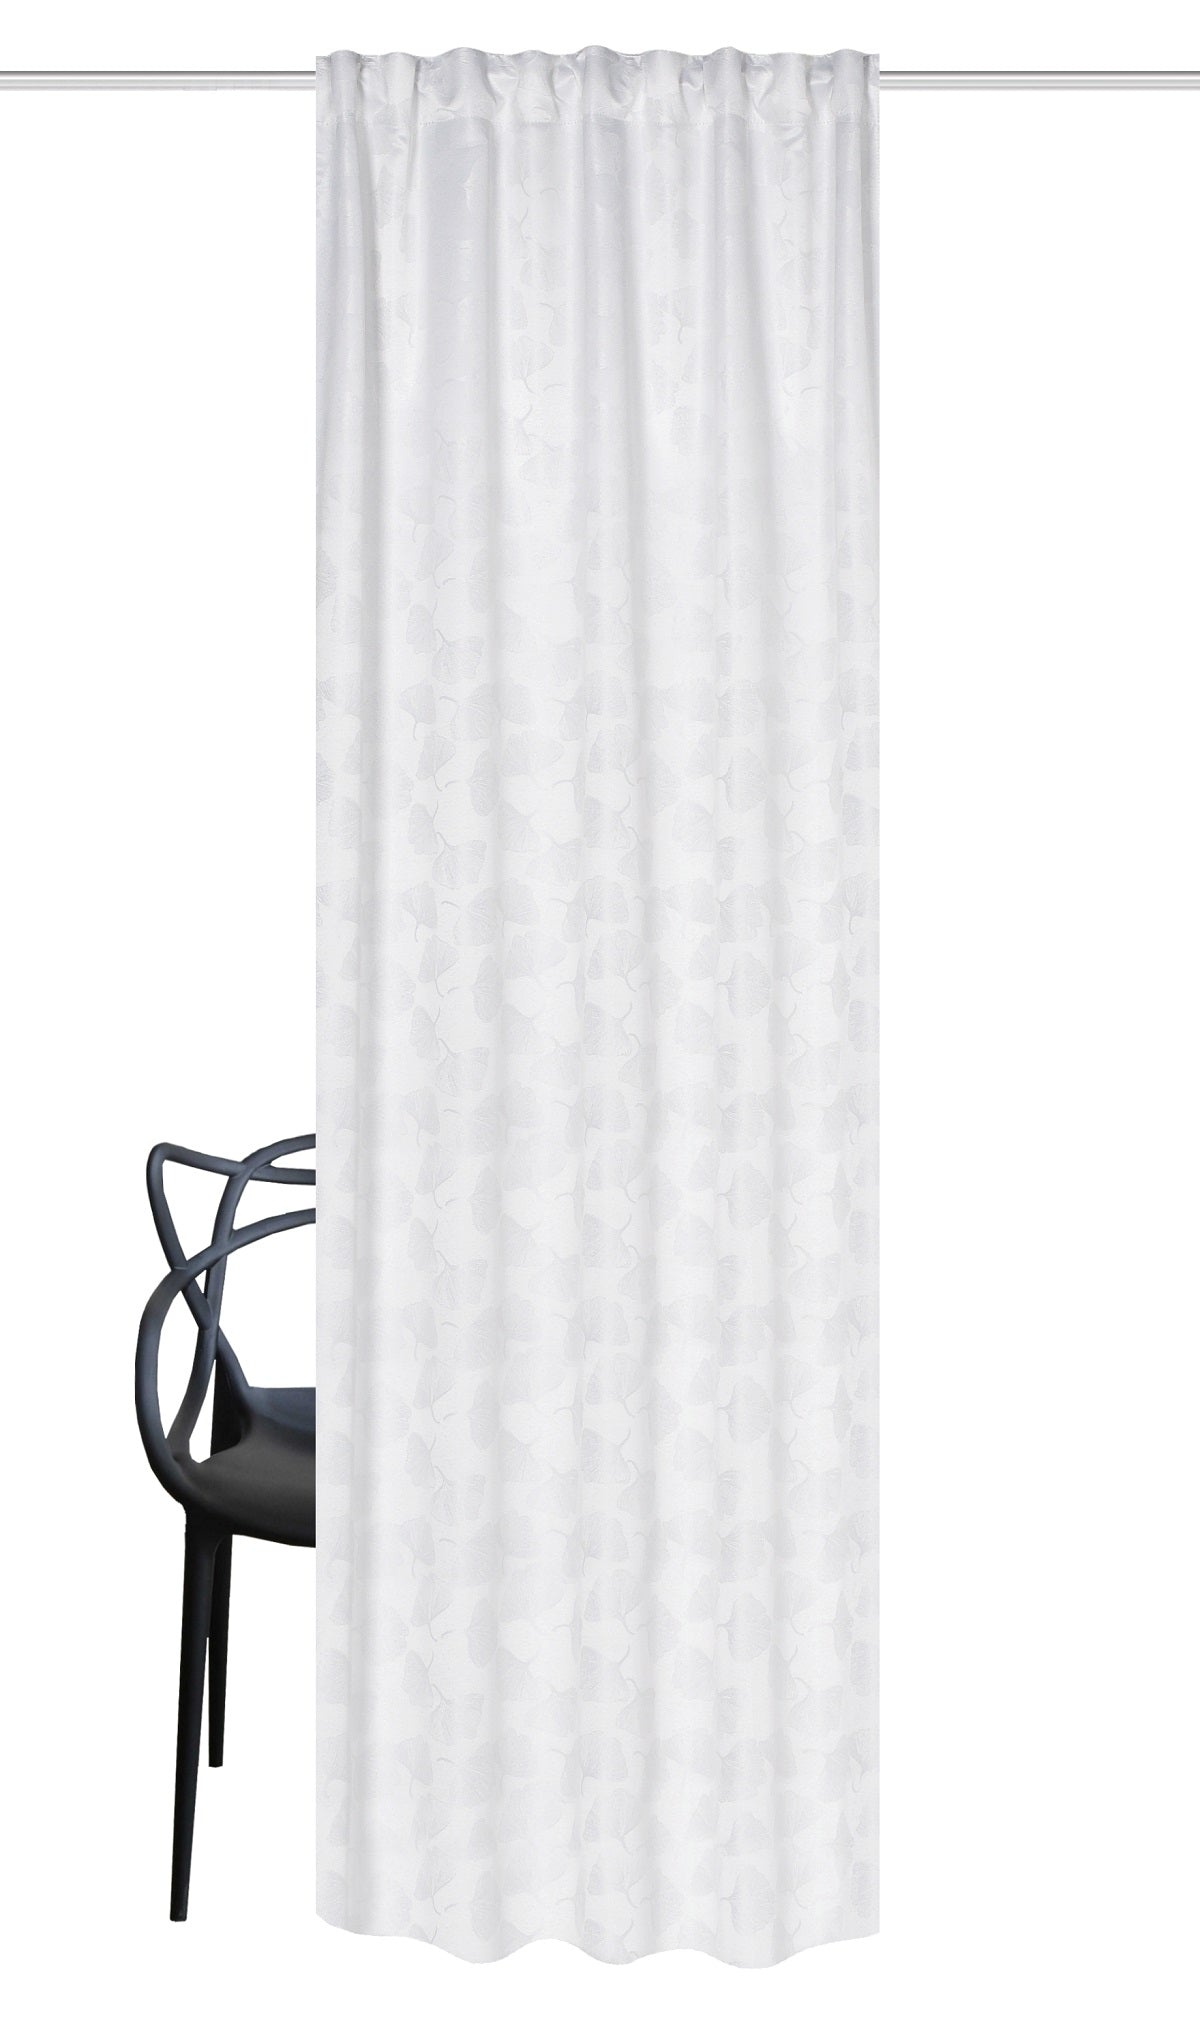 Night curtain wool white Fiona